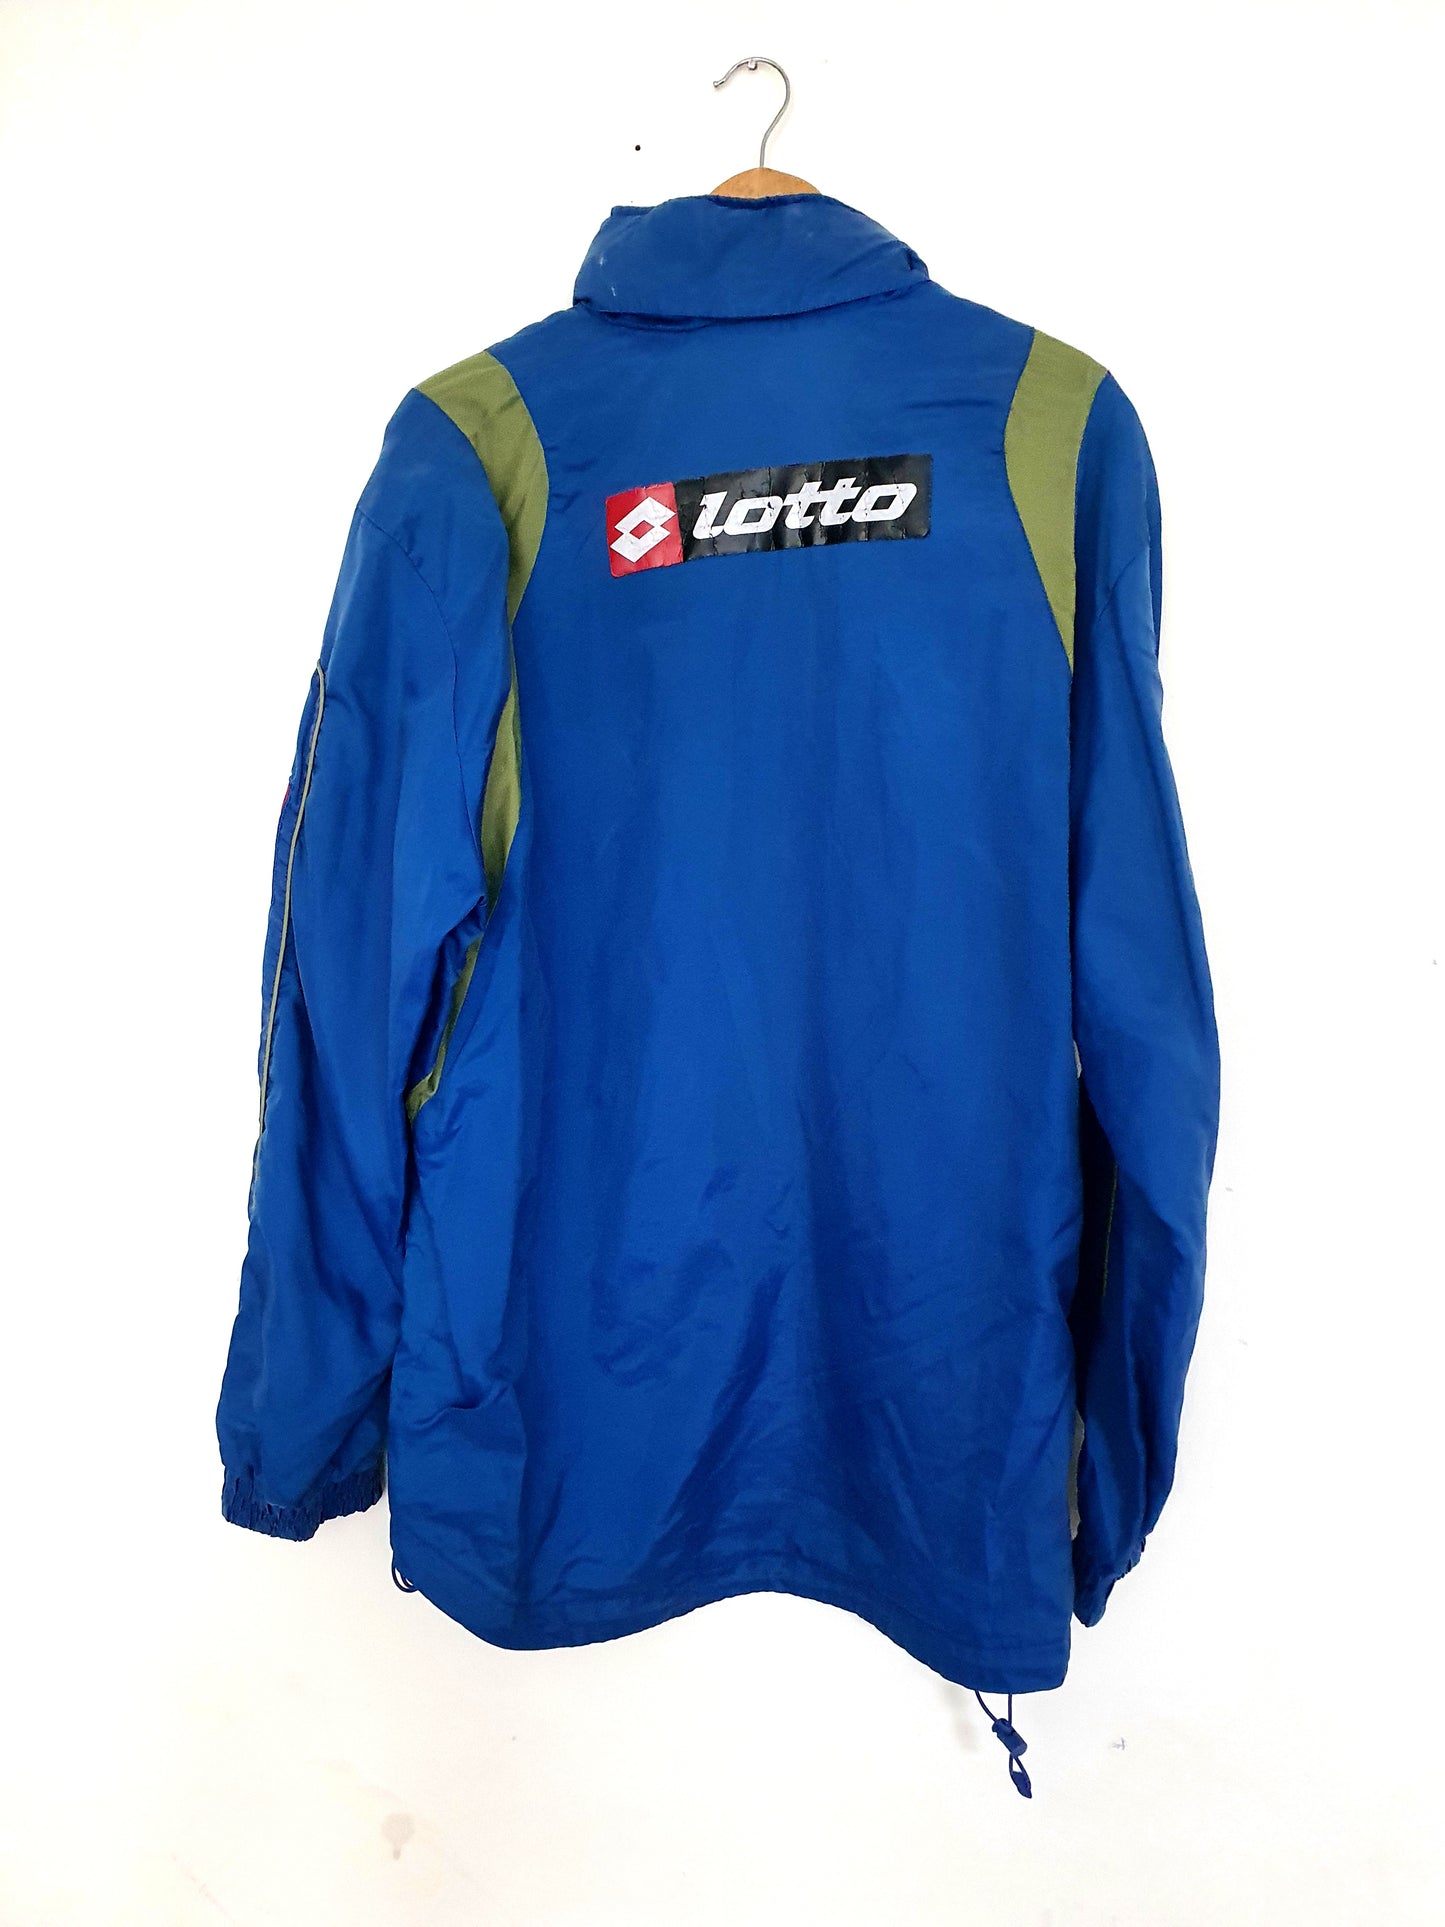 Lotto Chievo Verona Track Jacket XL